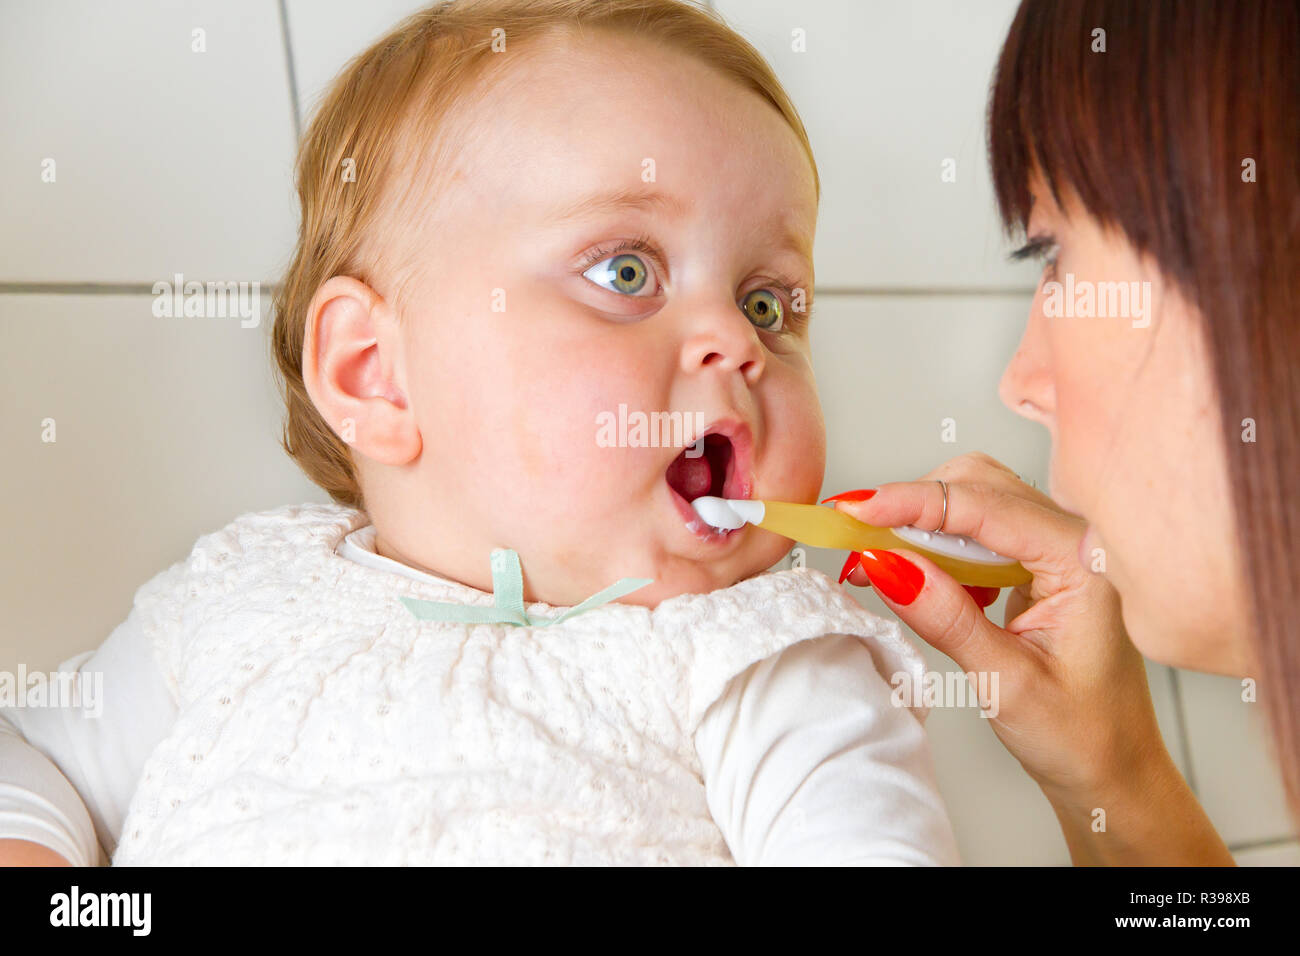 mama brushing teeth of her baby Stock Photo